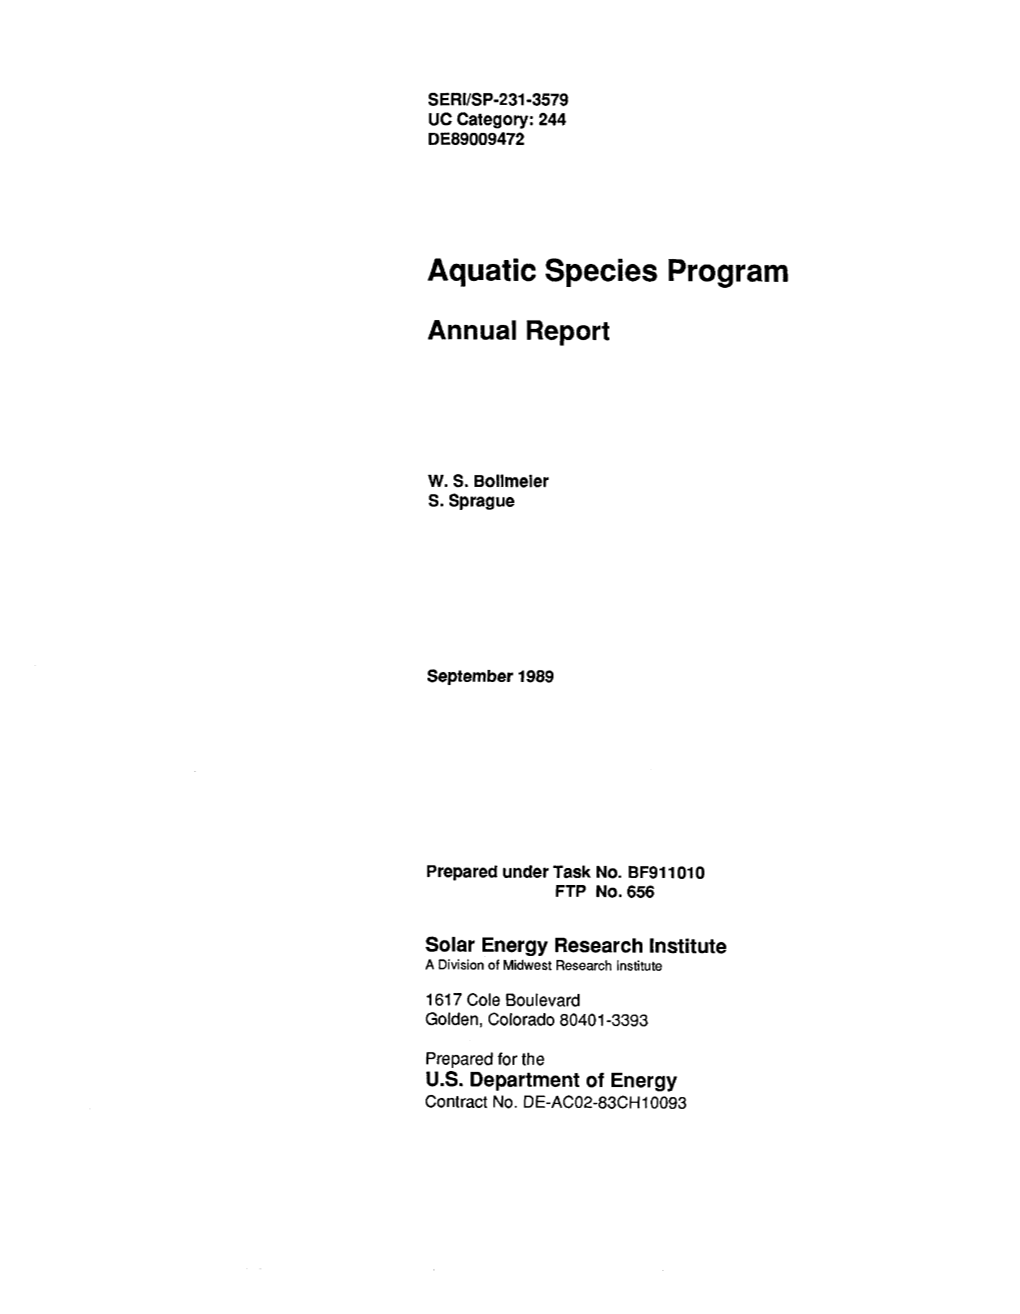 Aquatic Species Program